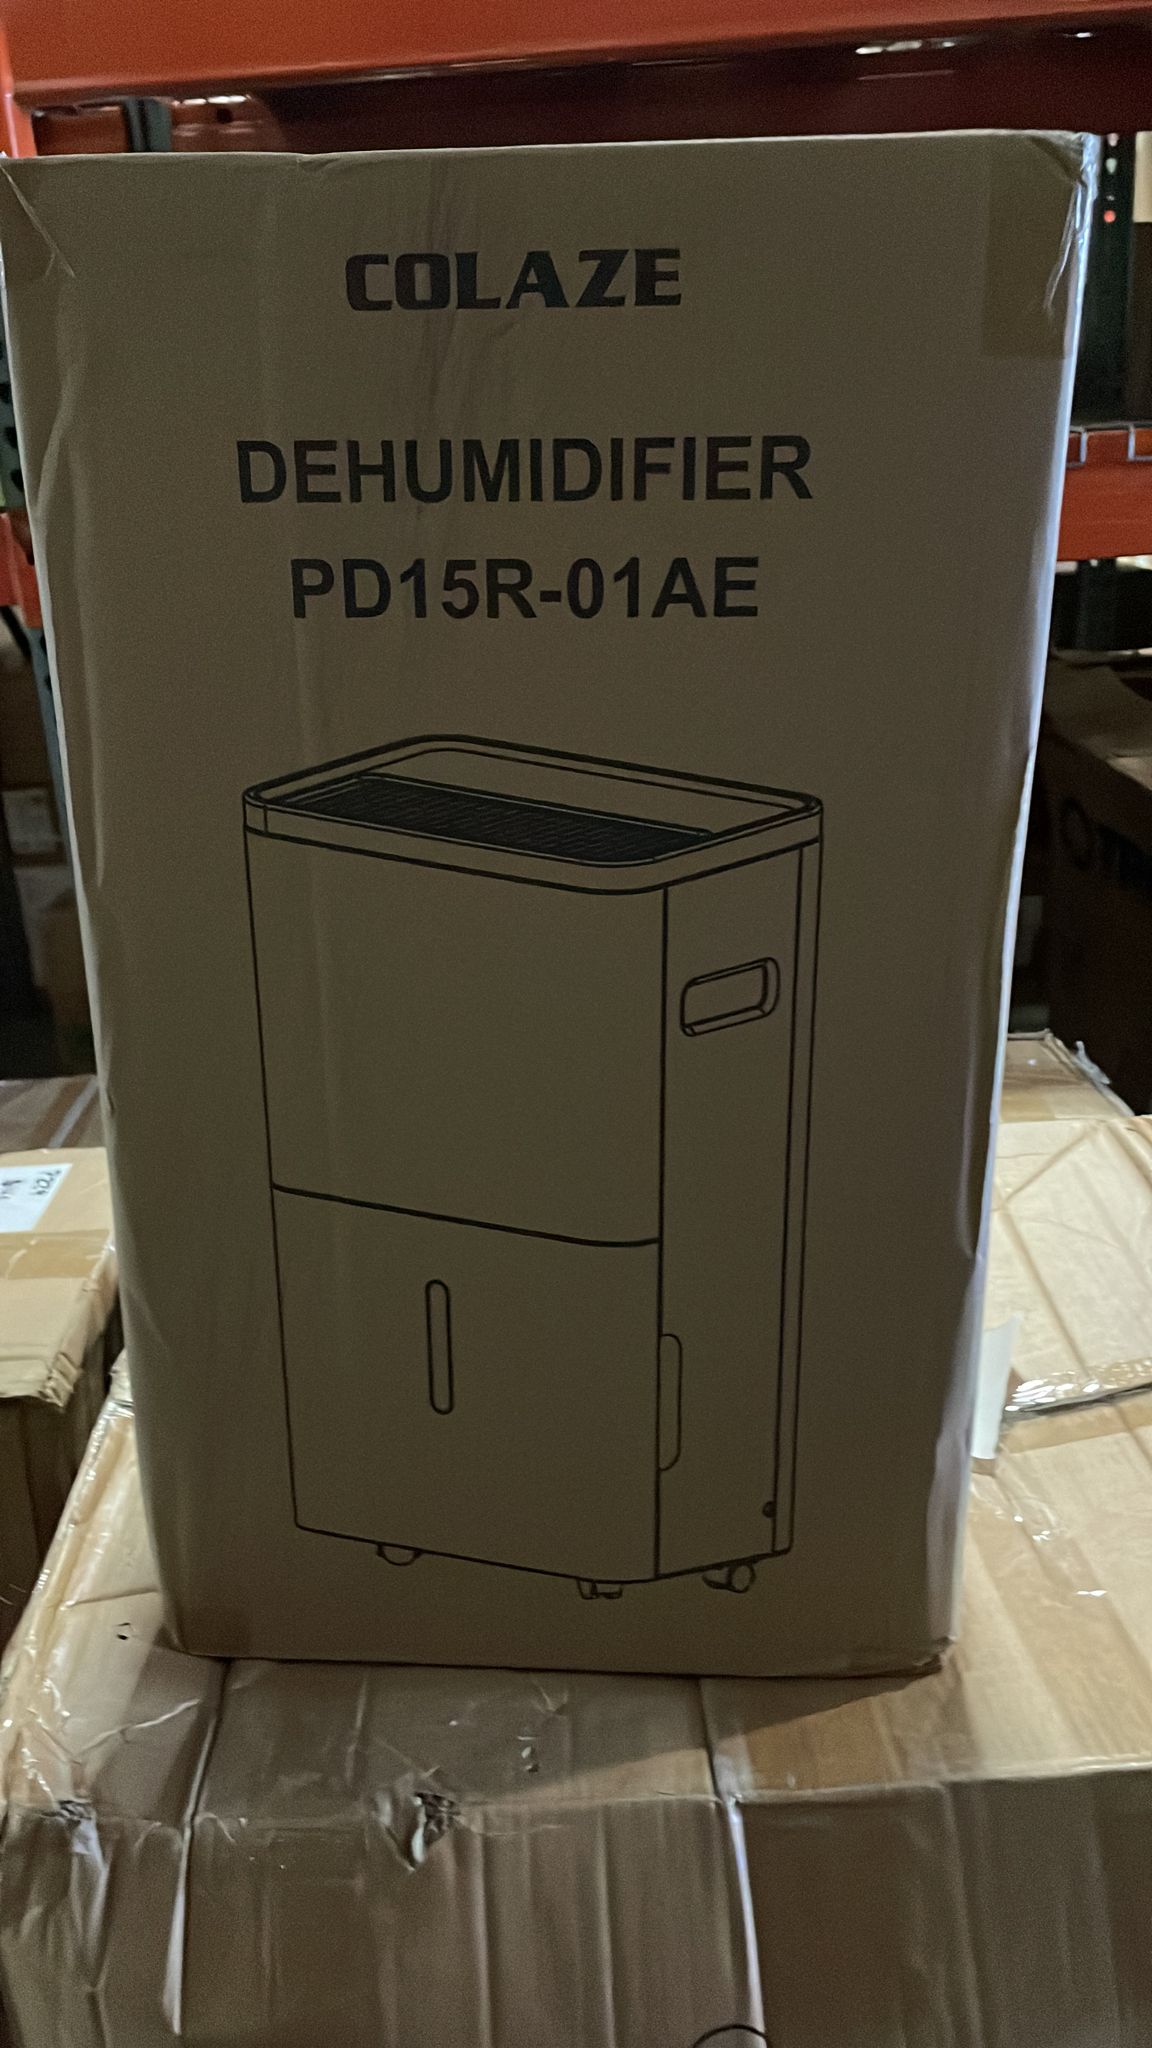 COLAZE 4500 Sq. Ft 70 Pint Dehumidifier for Basement - $125